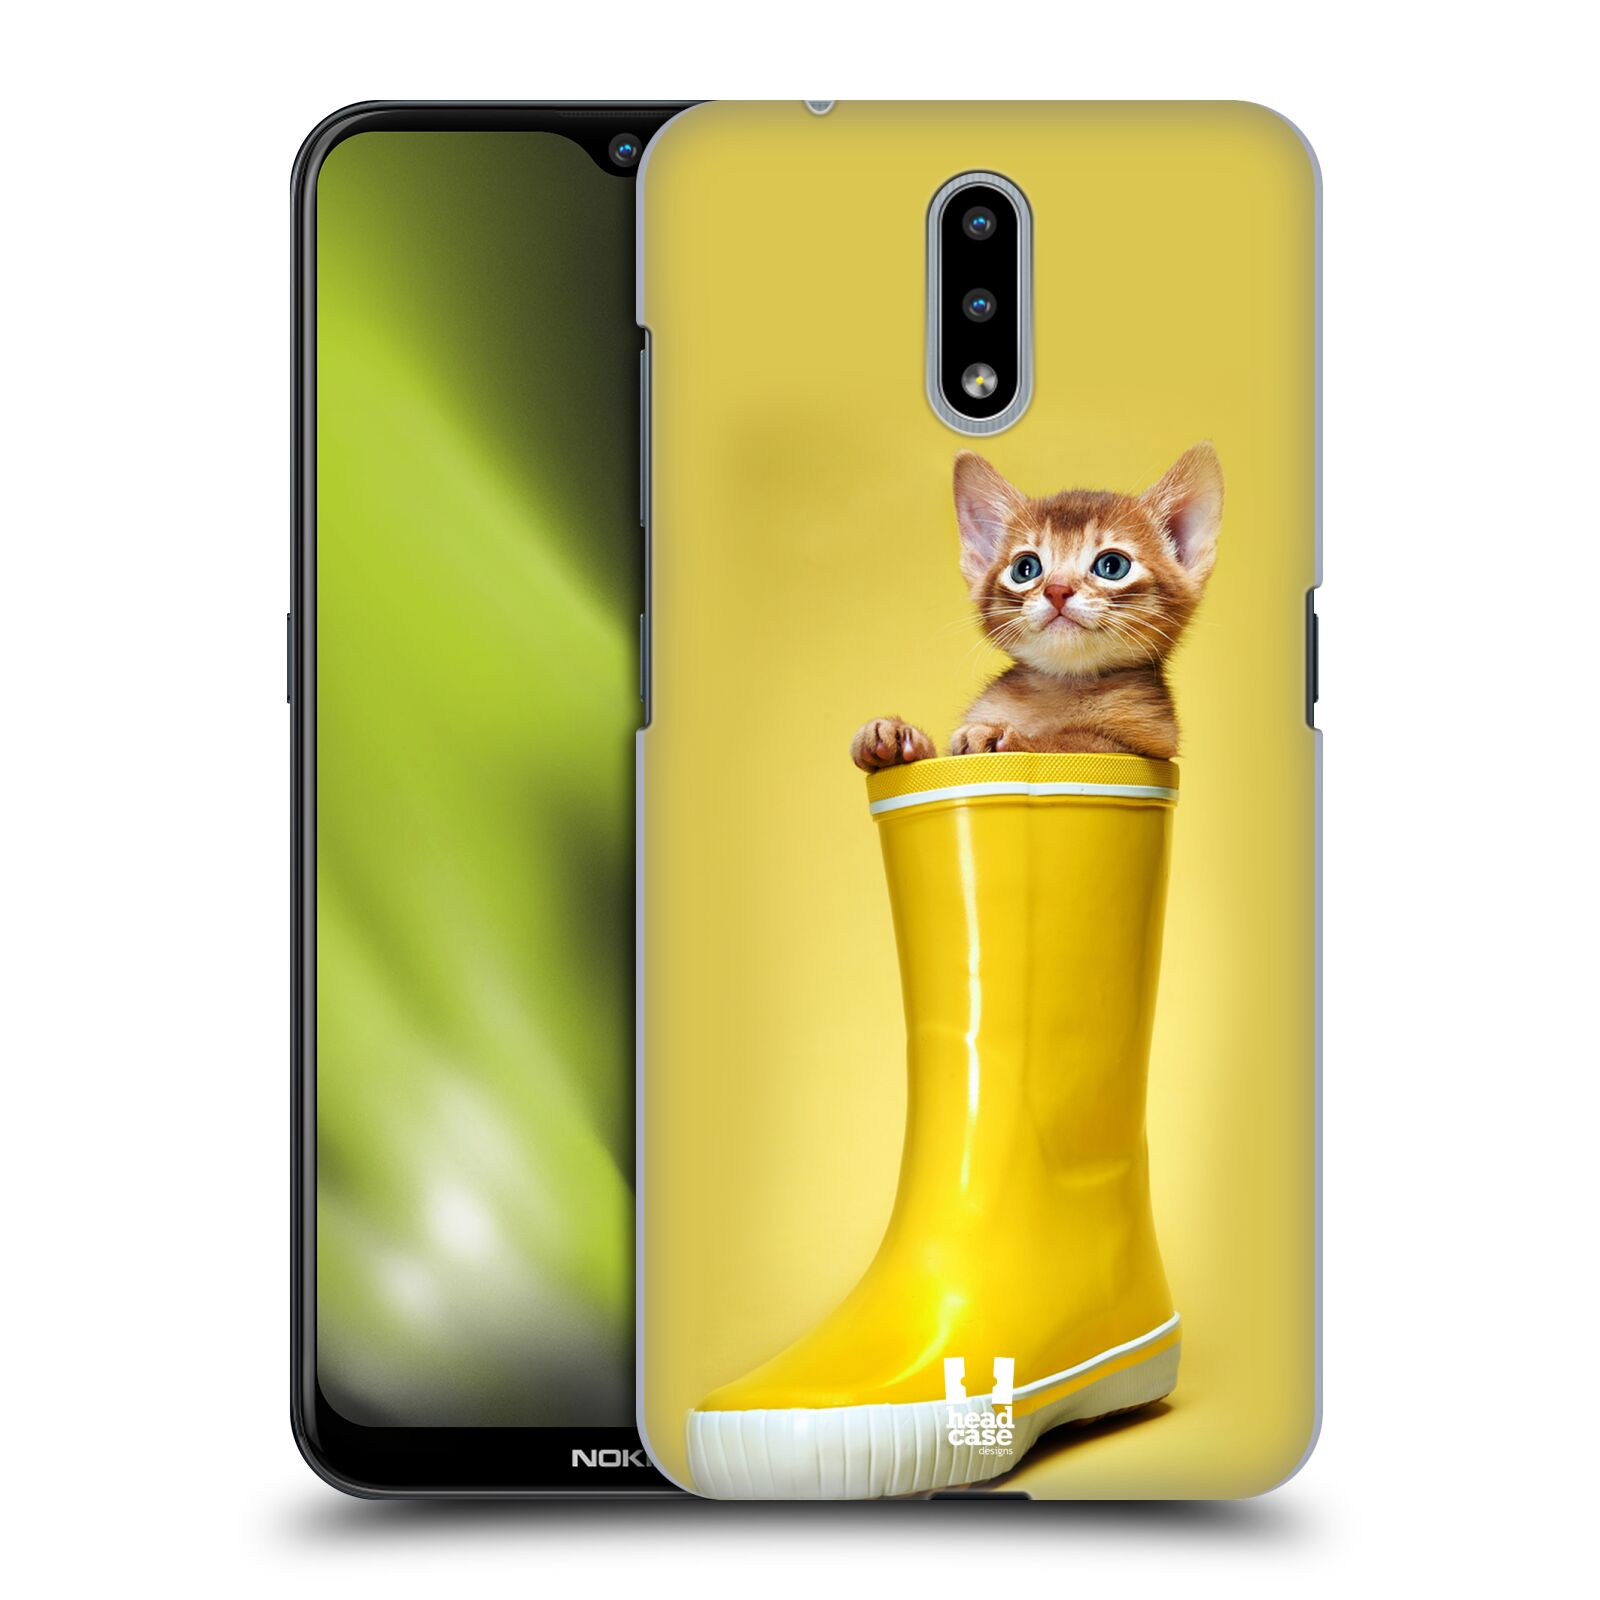 Plastový obal HEAD CASE na mobil Nokia 2.3 vzor Legrační zvířátka kotě v botě žlutá